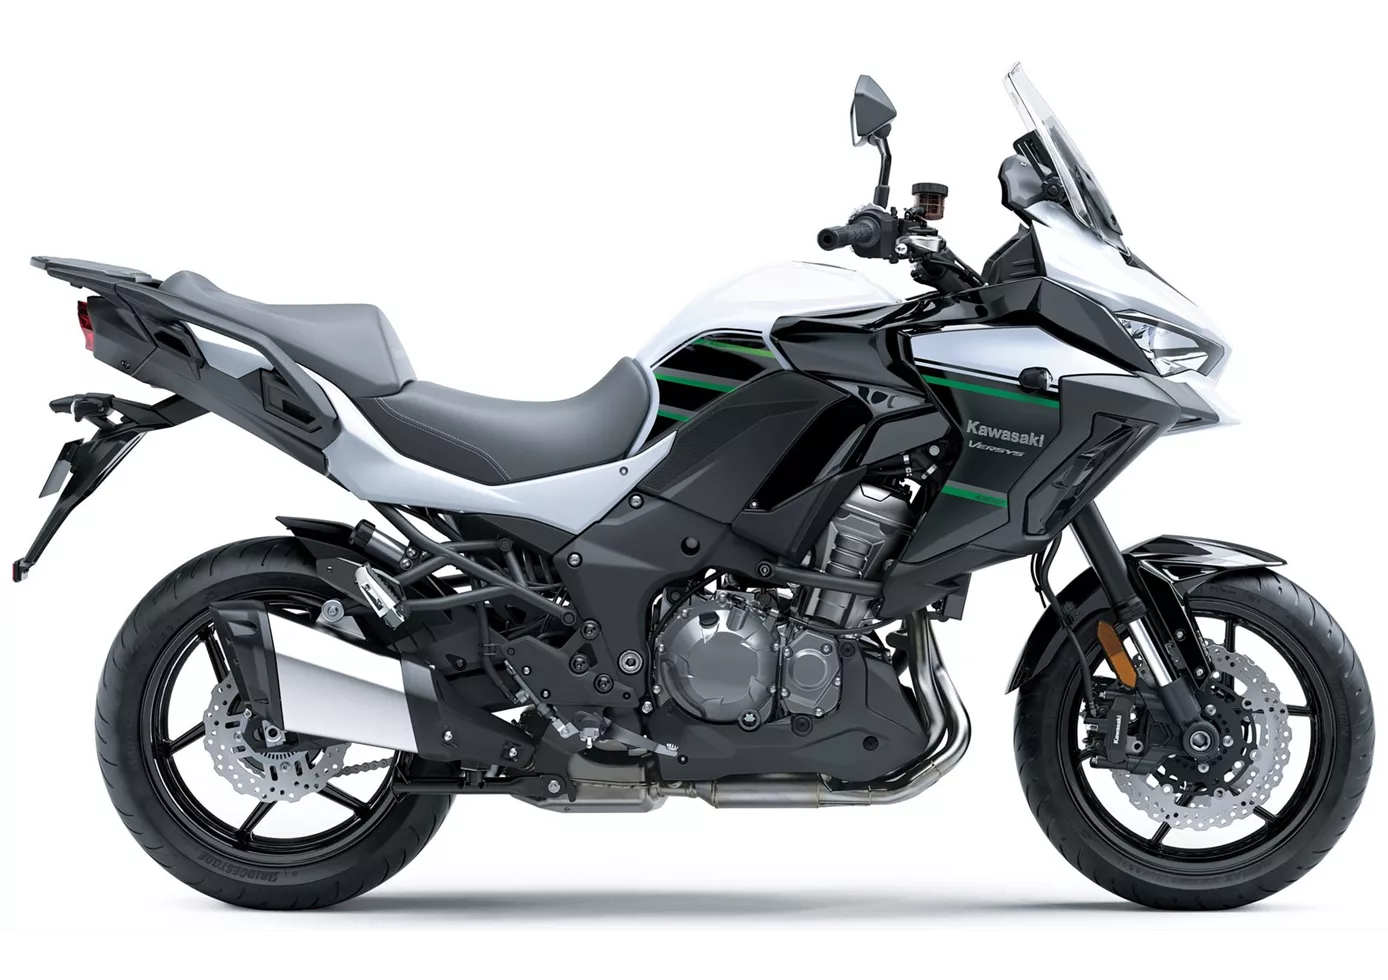 Kawasaki Versys 1000 2020